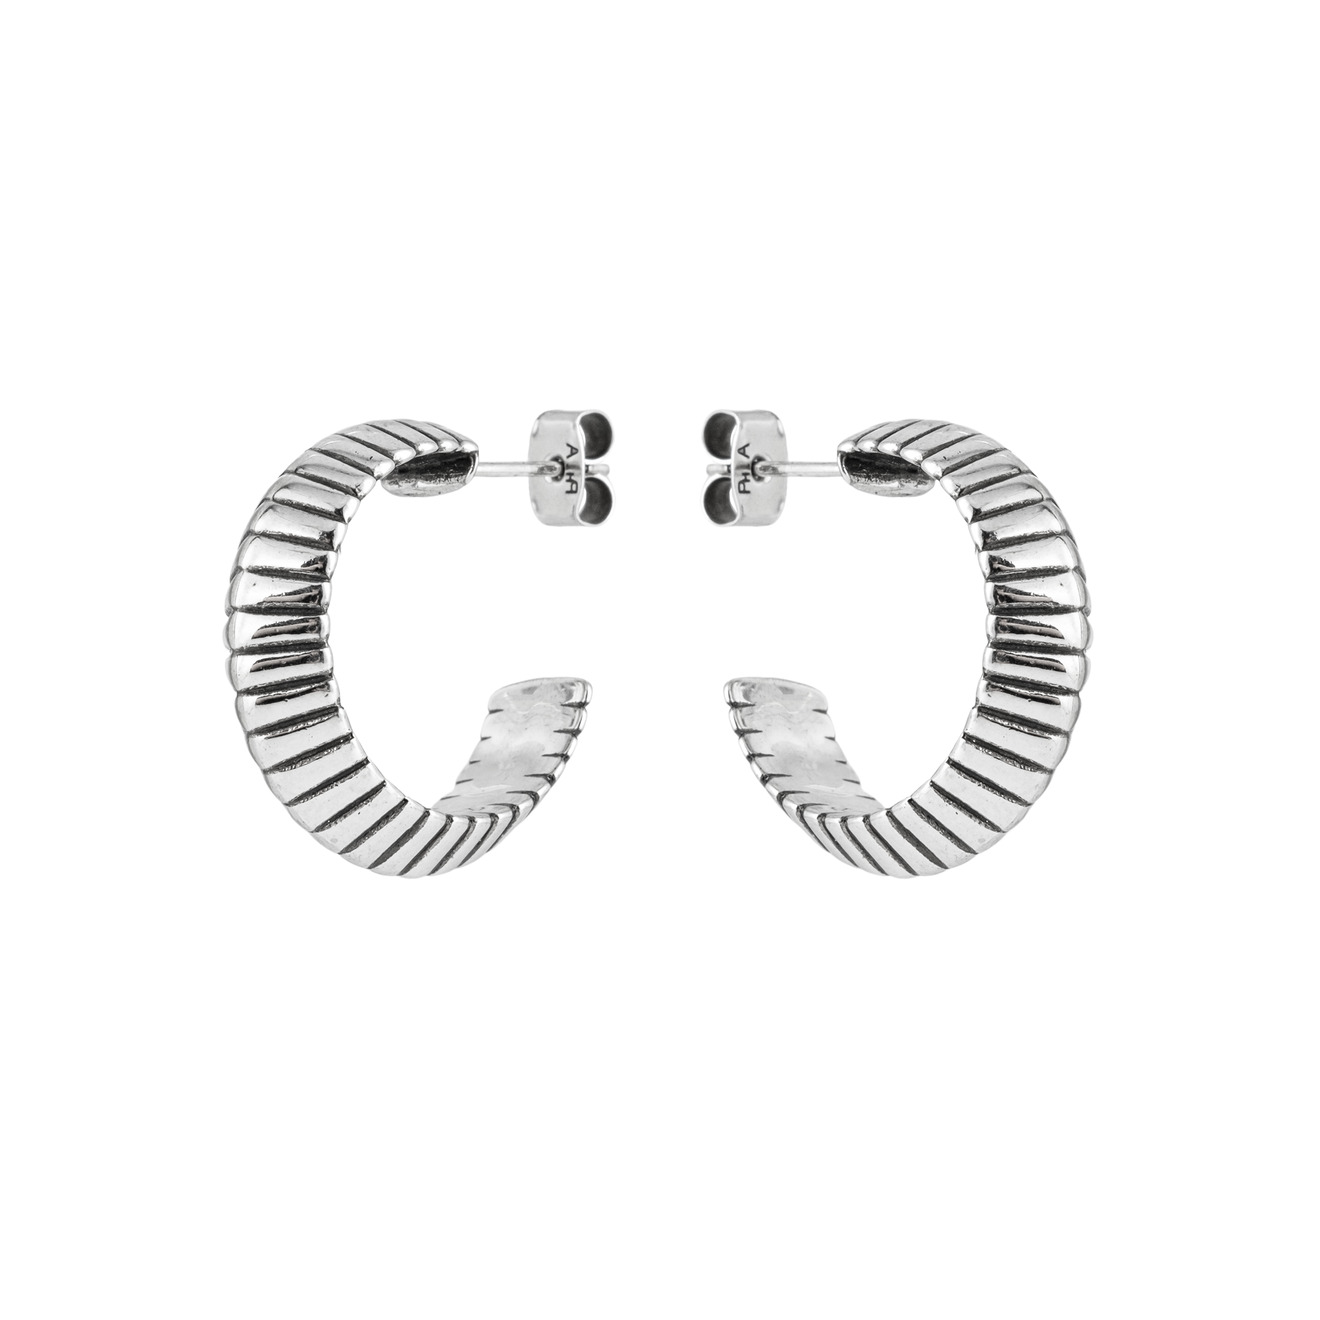 Philippe Audibert Серьги-кольца Jens с серебряным покрытием philippe audibert кольцо jens с серебряным покрытием